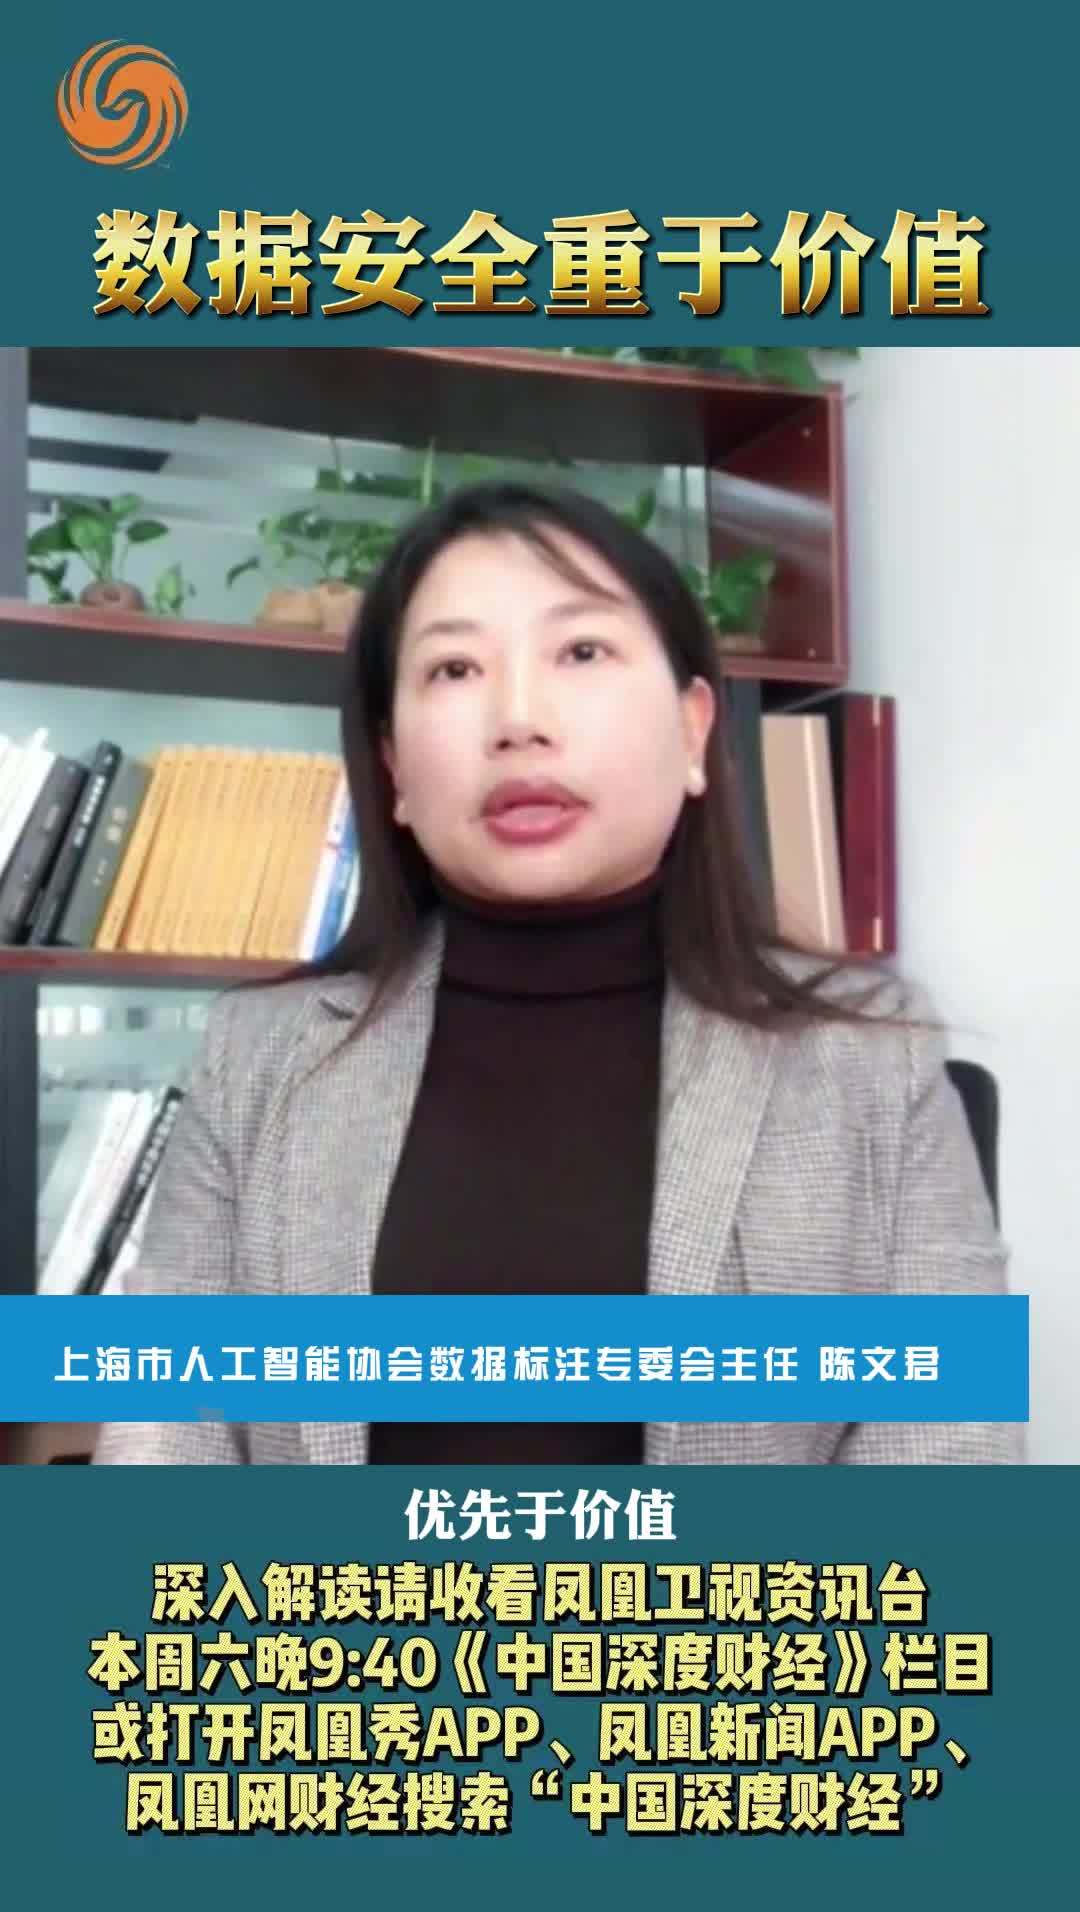 上海市人工智能协会数据标注专委会主任陈文君：数据安全重于价值